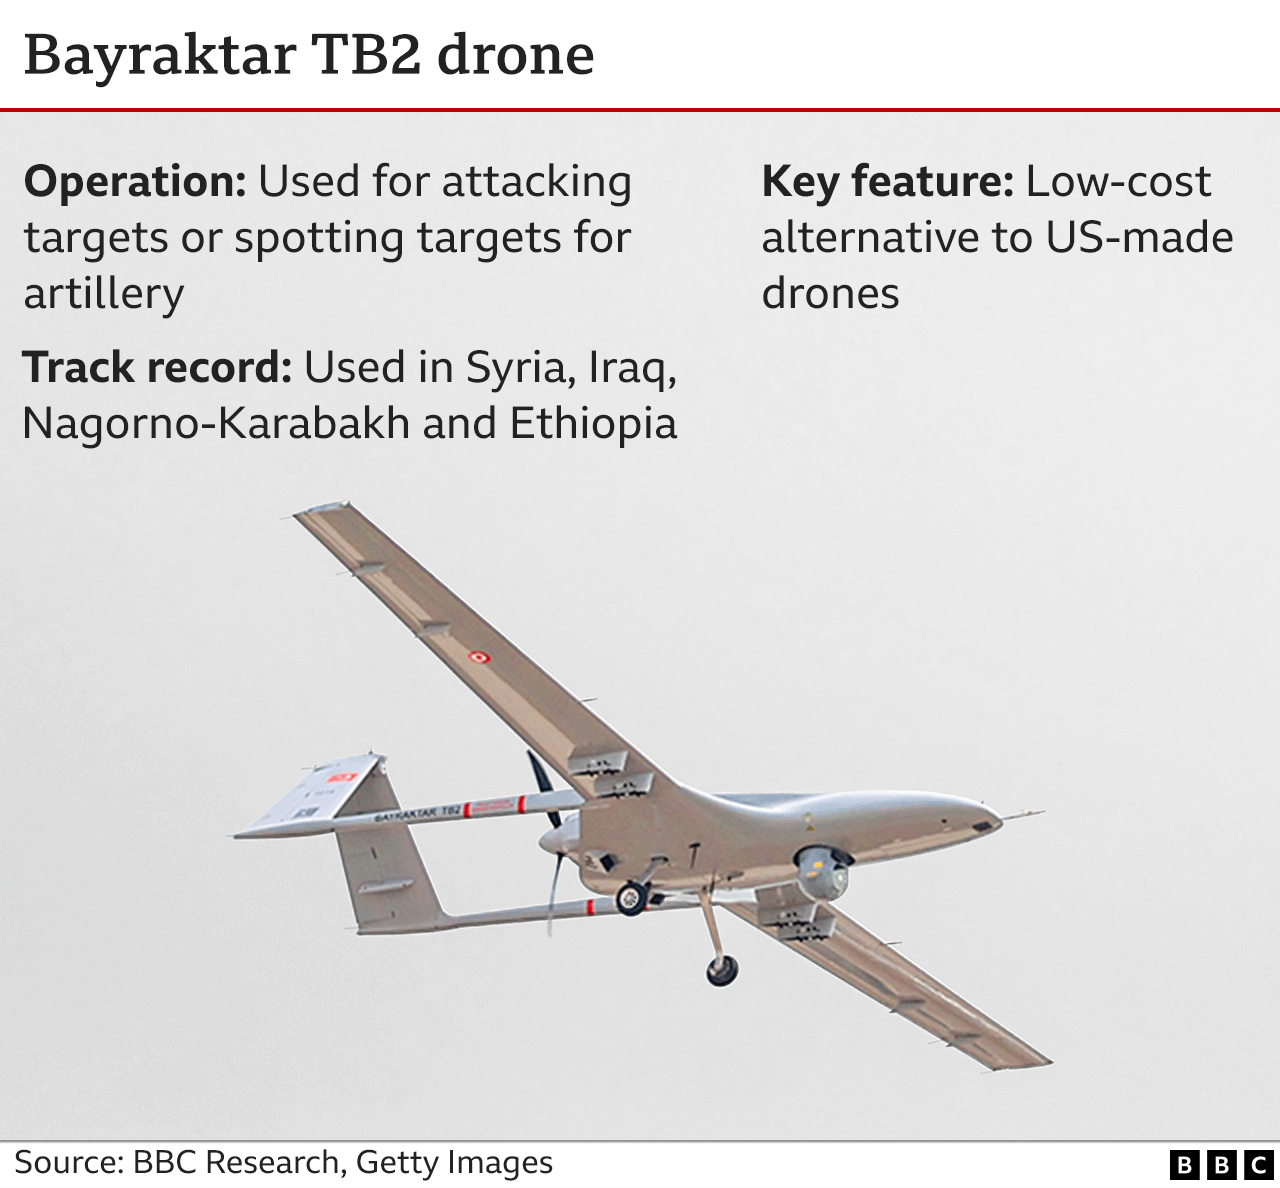 Grafico che mostra le caratteristiche del drone Bayraktar TB2. Il Bayraktar TB2 è un'alternativa a basso costo ai droni di produzione statunitense e può essere utilizzato per attaccare direttamente o coordinare attacchi con altri sistemi su obiettivi.